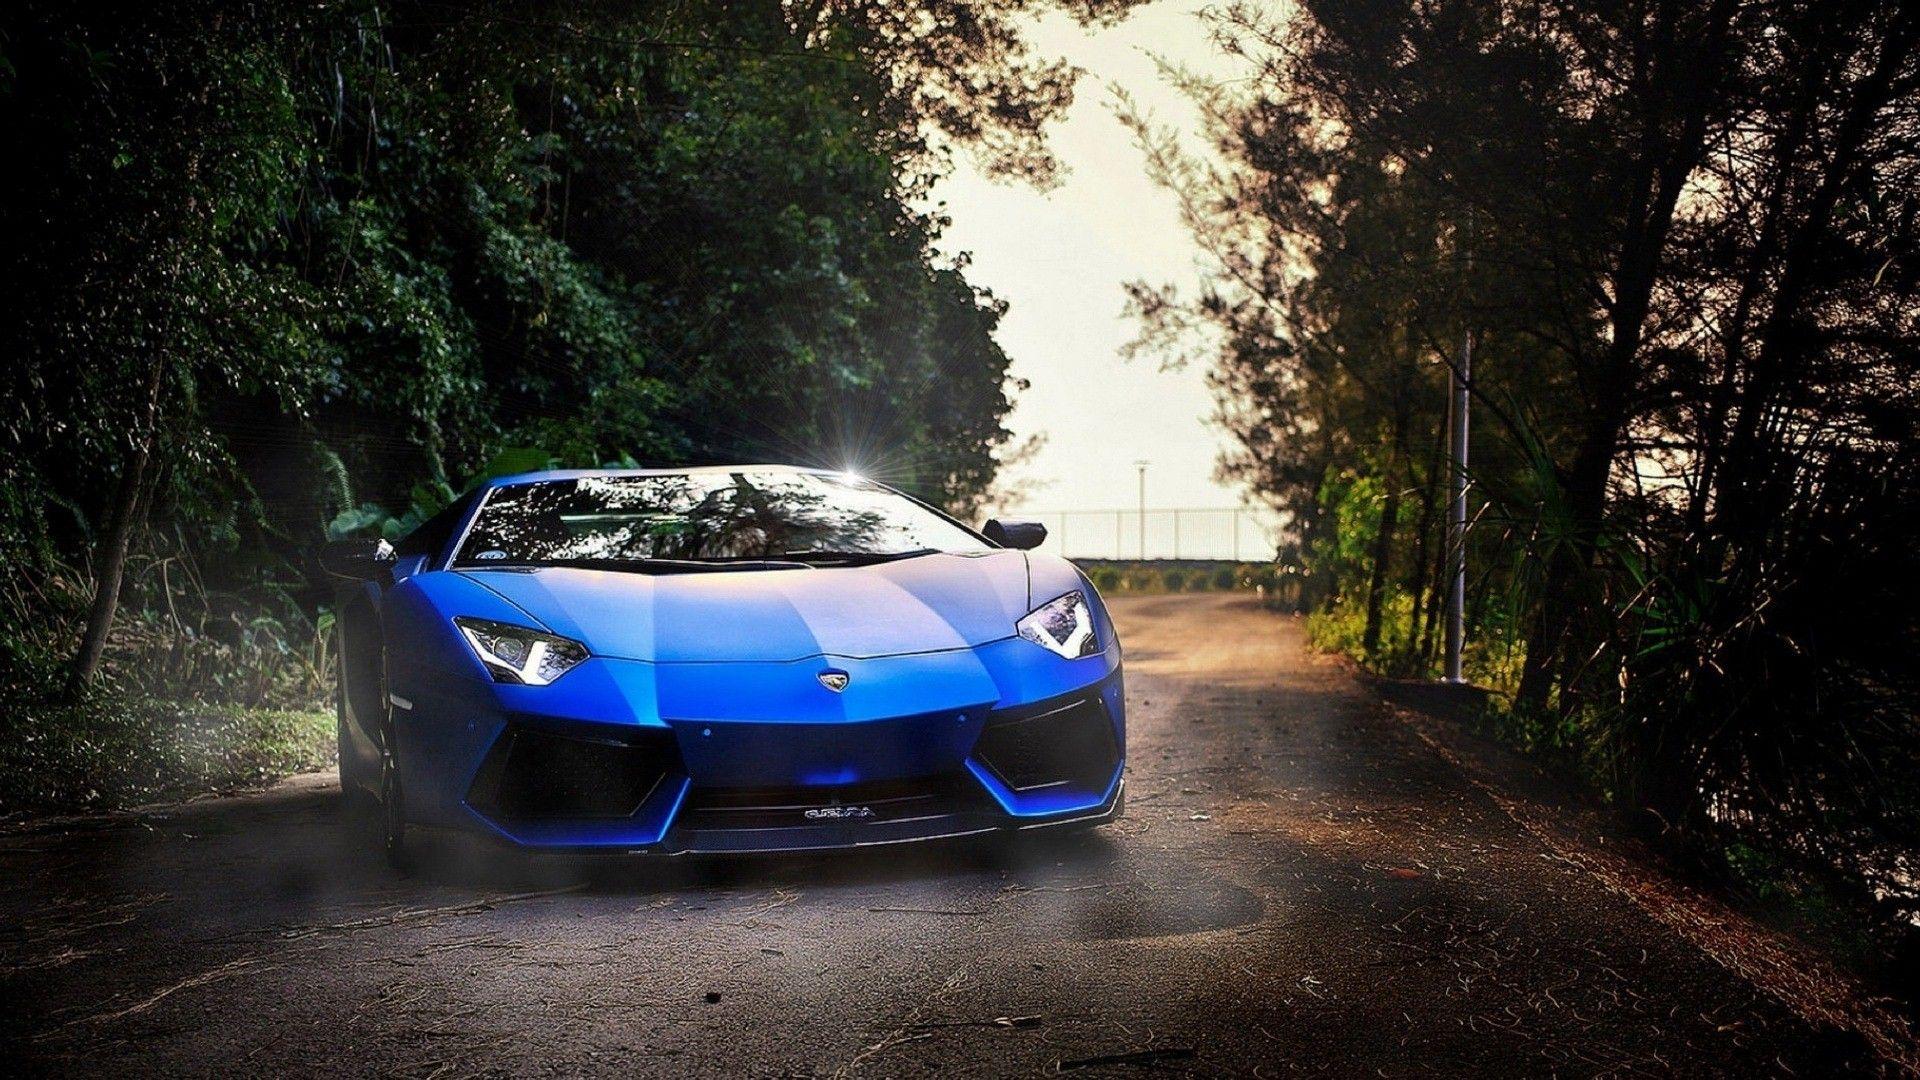 Beautiful Blue Aventador Lamborghini Car Photo